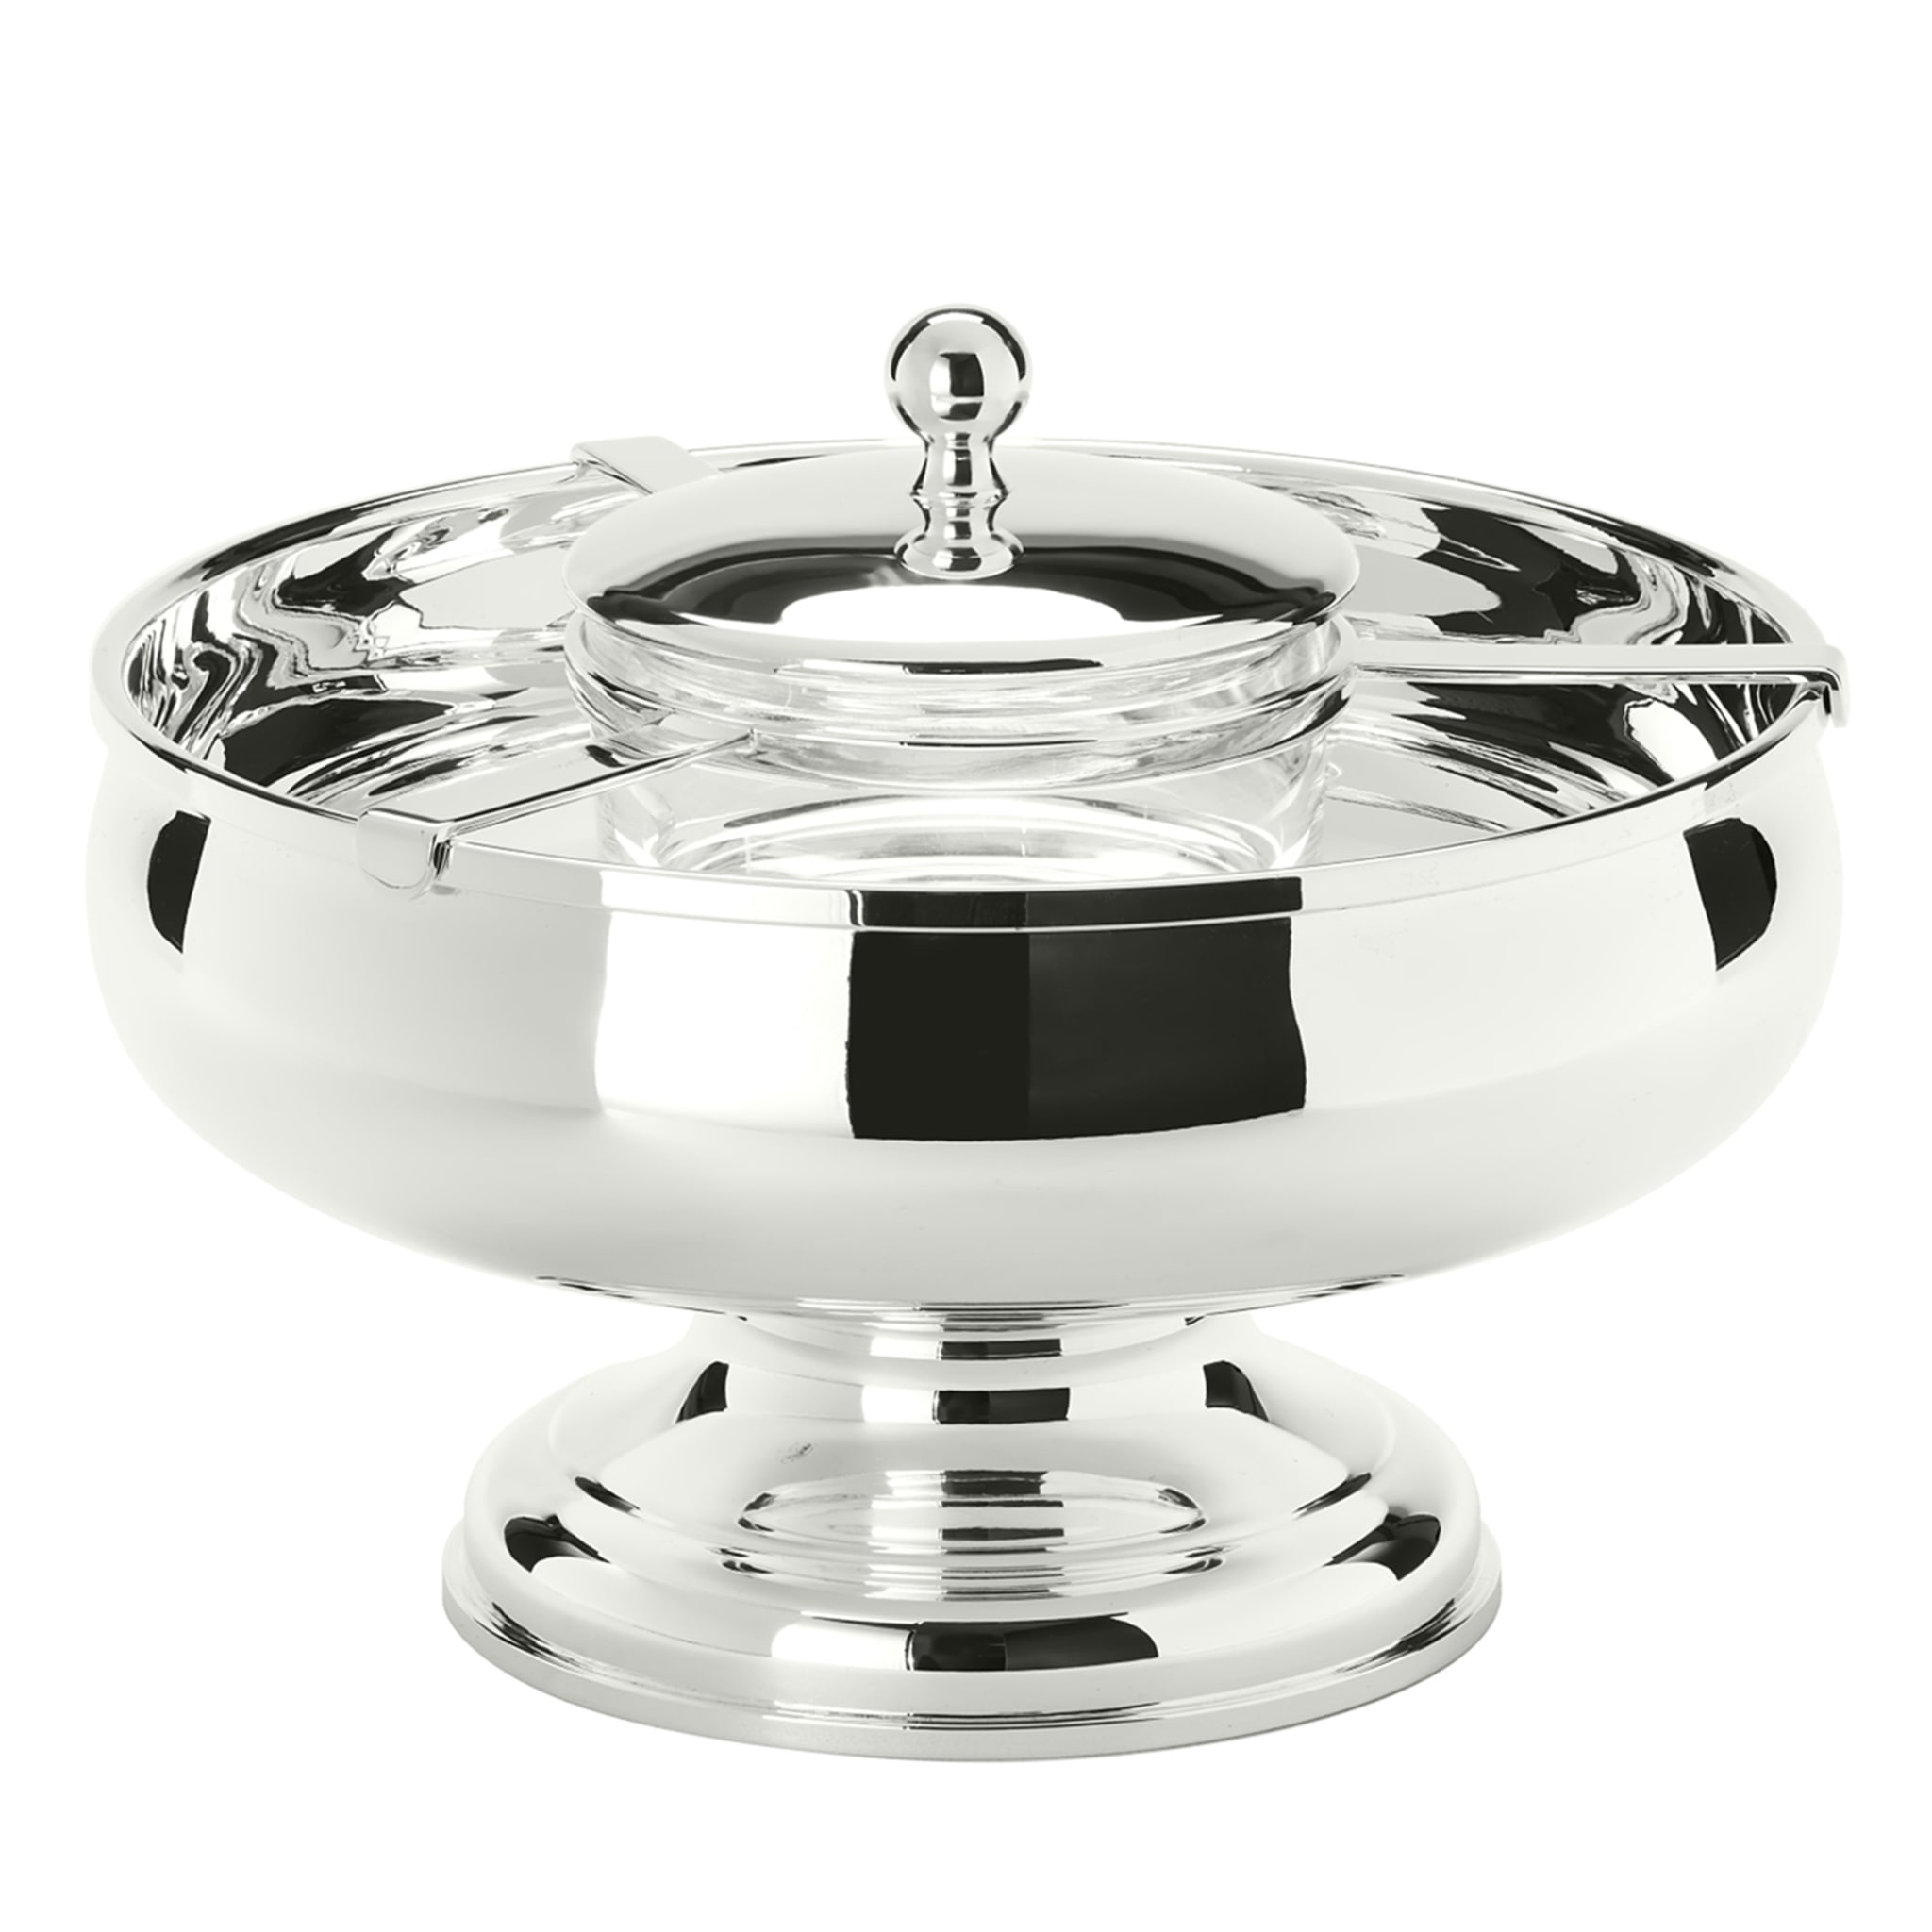 Essentia Caviar Bowl con soporte - Vista principal